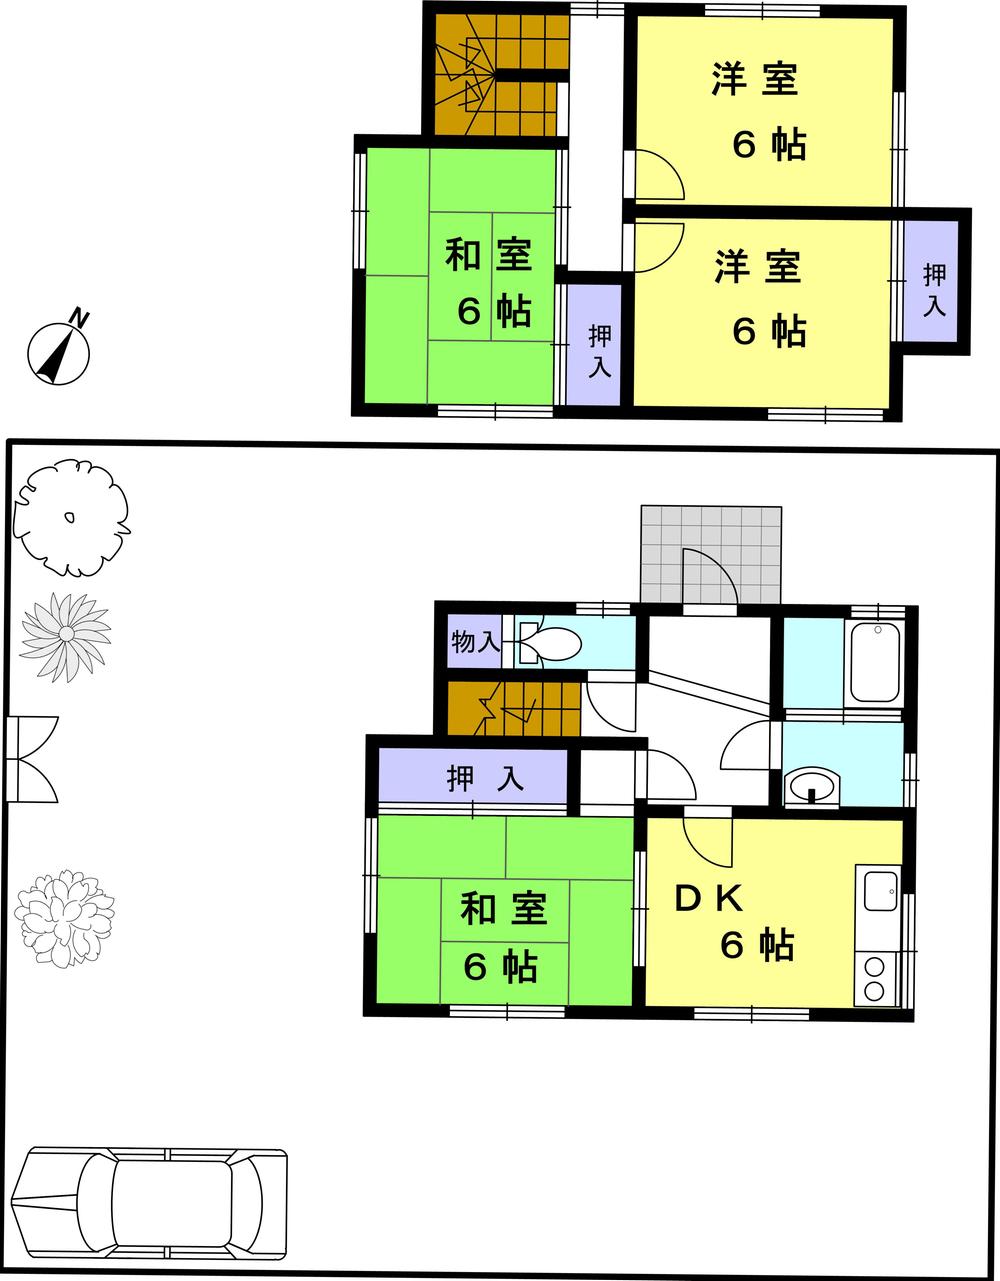 Floor plan. 9 million yen, 4DK, Land area 222.4 sq m , Building area 82.43 sq m